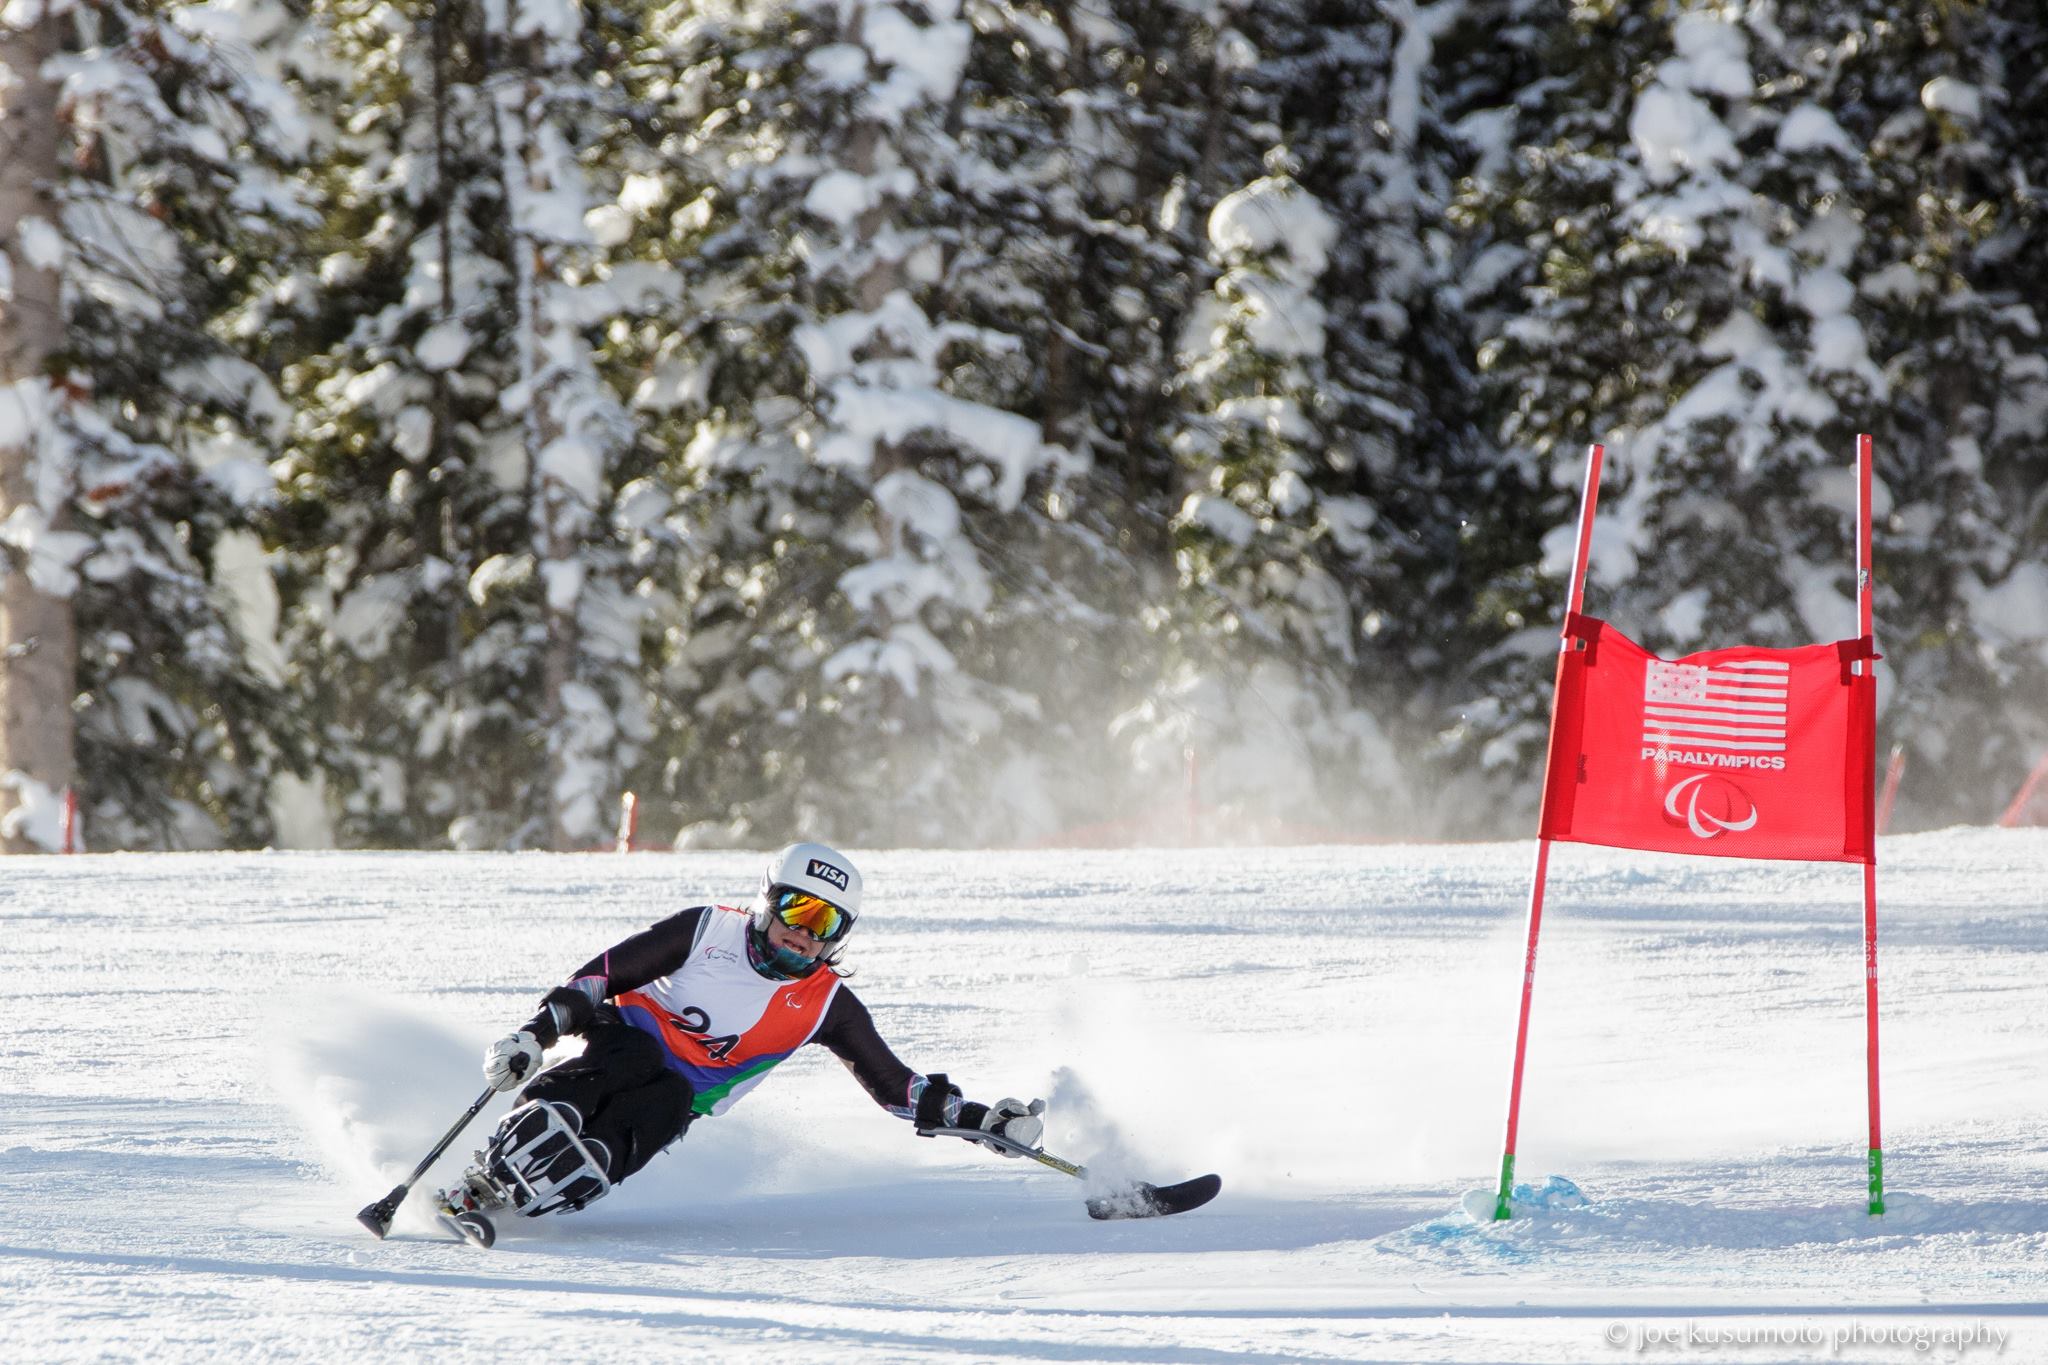 Paralympic Skiing, Para Skiing, adaptive Skiing, Ski racing Alpine Skiing